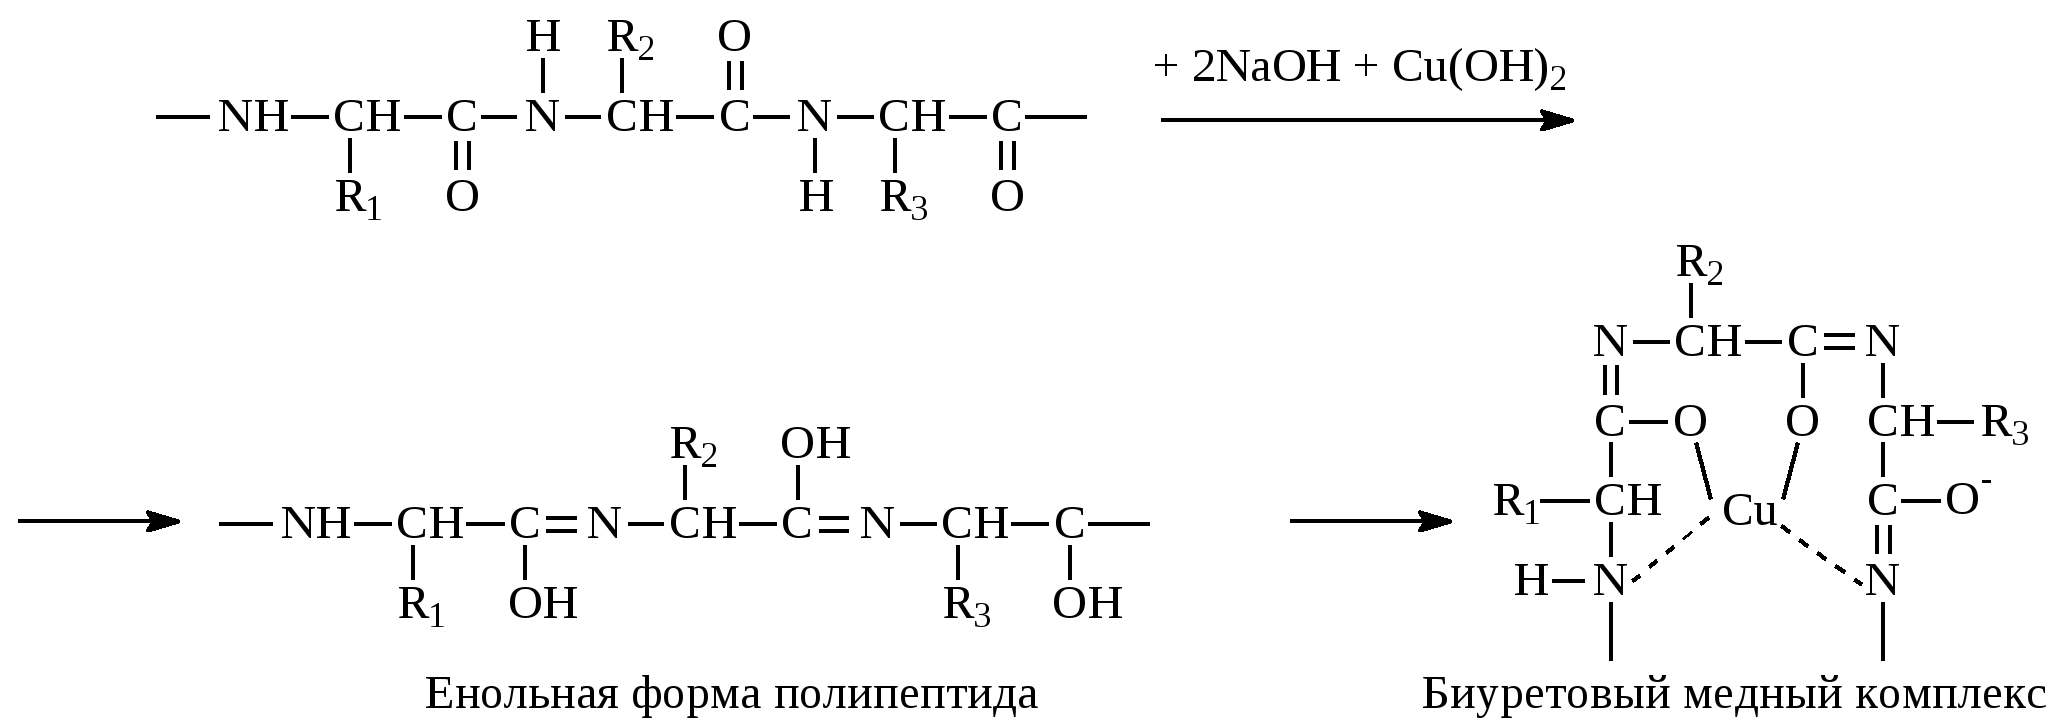 Полипептиды с азотной кислотой дают фиолетовое окрашивание. Формы полипептидов. Енольная форма. Реакция глицина с формальдегидом. Глицин и формальдегид.